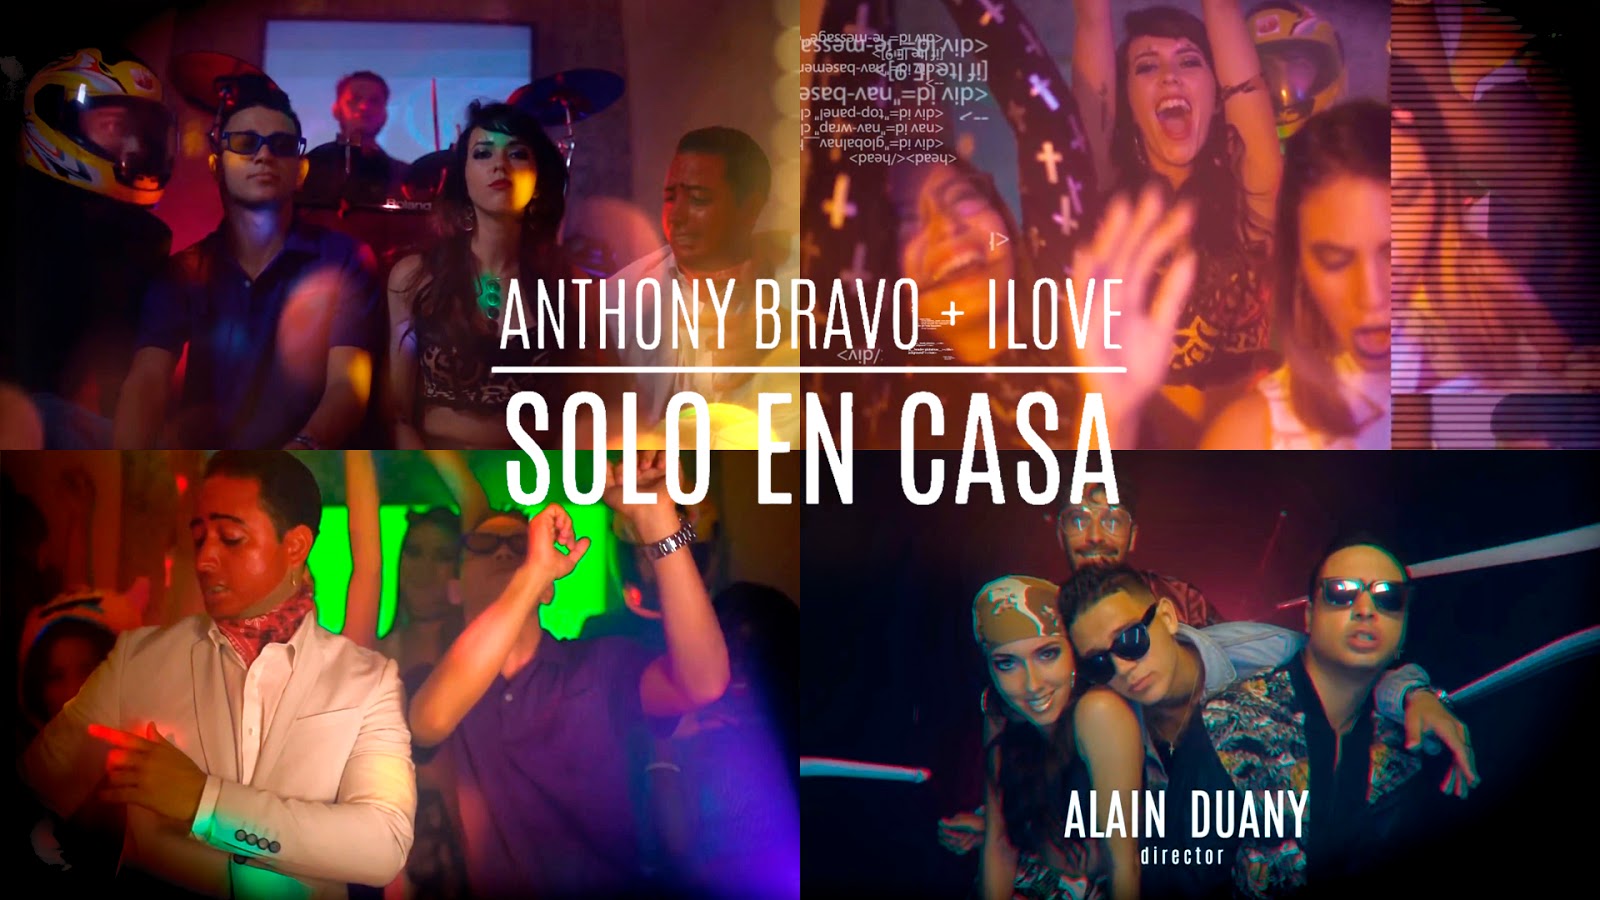 iLove & Anthony Bravo - ¨Solo en Casa¨ - Videoclip - Dirección: Alain Duany. Portal del Vídeo Clip Cubano